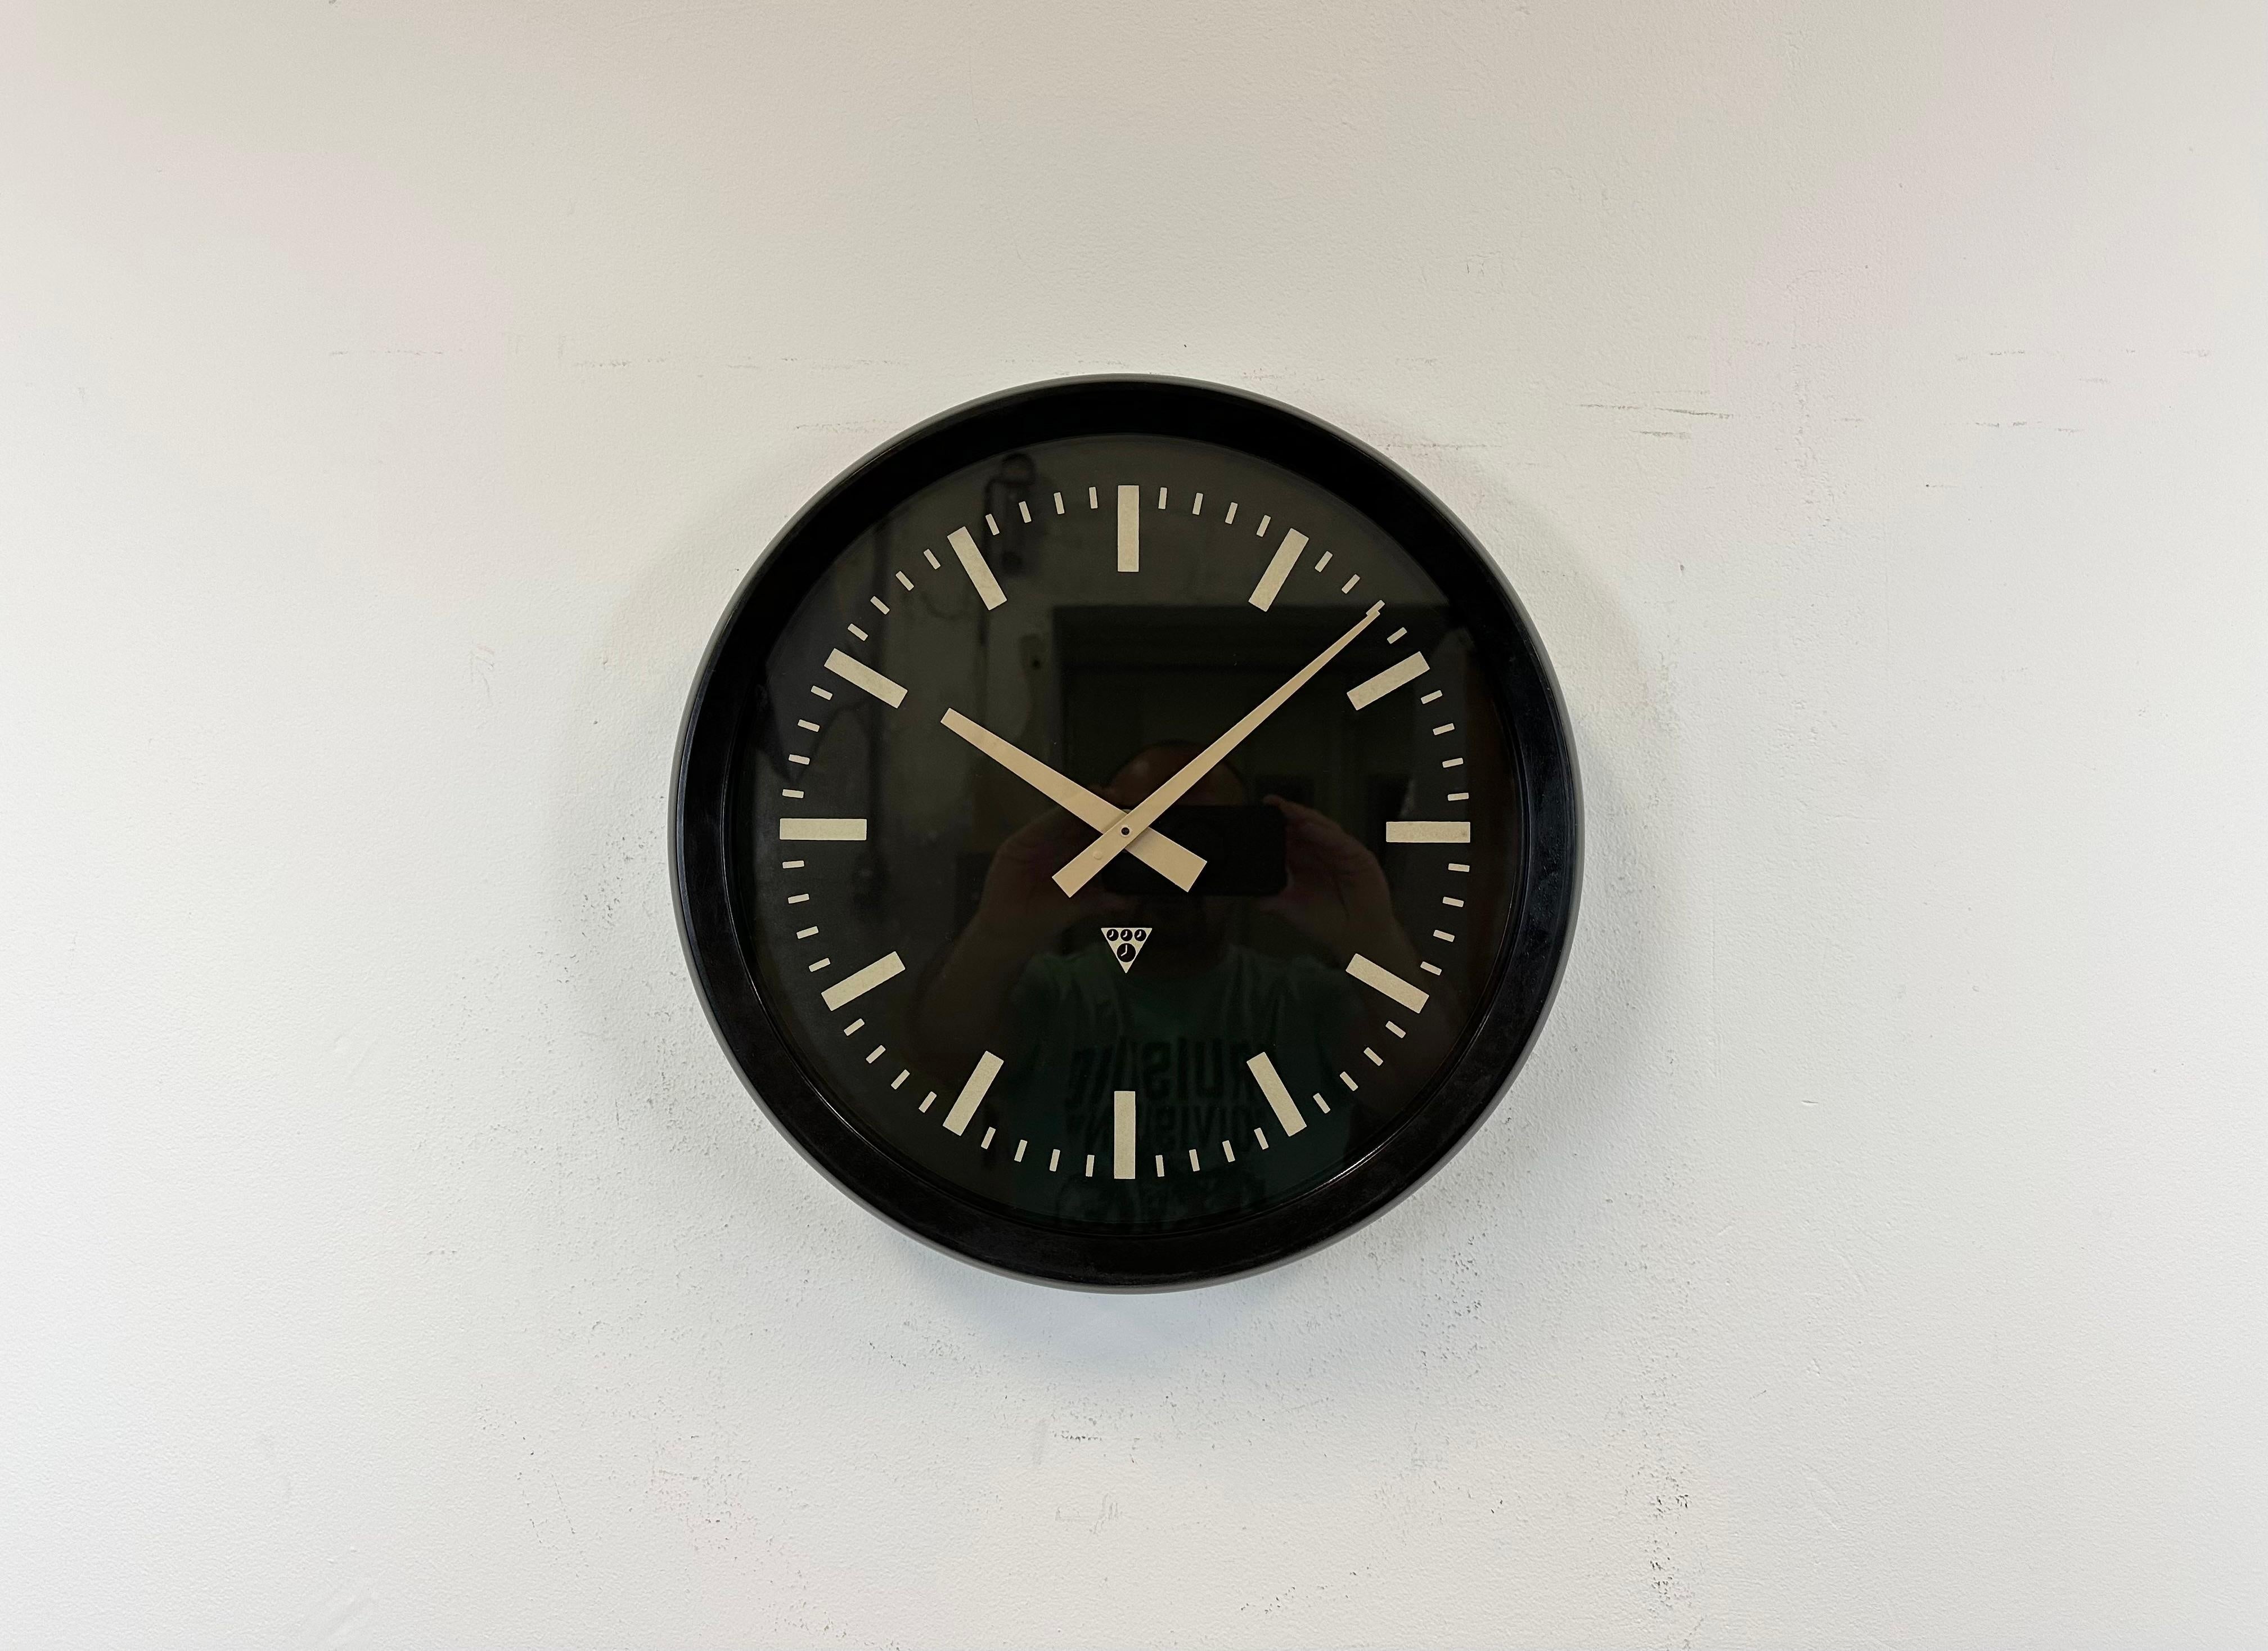 Diese Wanduhr wurde von Pragotron in der ehemaligen Tschechoslowakei in den 1970er Jahren hergestellt. Die Uhr hat einen dunkelbraunen (schwarzen) Bakelitrahmen, ein schwarzes Bakelit-Zifferblatt, Aluminiumzeiger und eine Klarglasabdeckung. Das